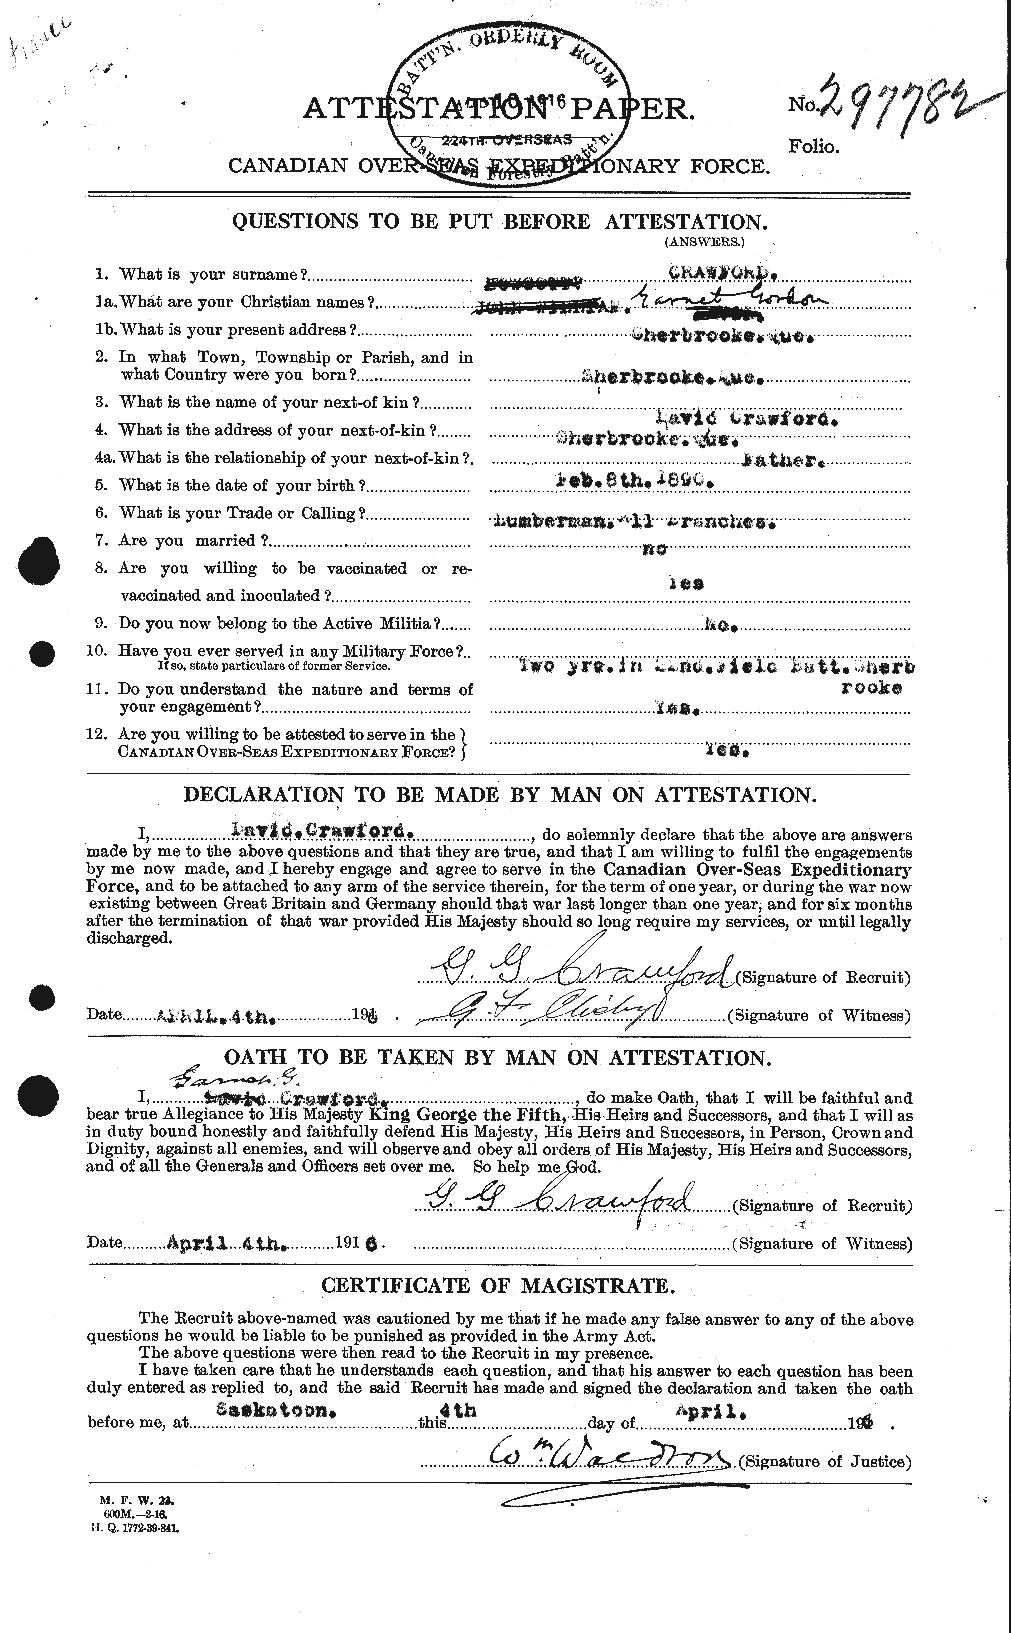 Dossiers du Personnel de la Première Guerre mondiale - CEC 060718a